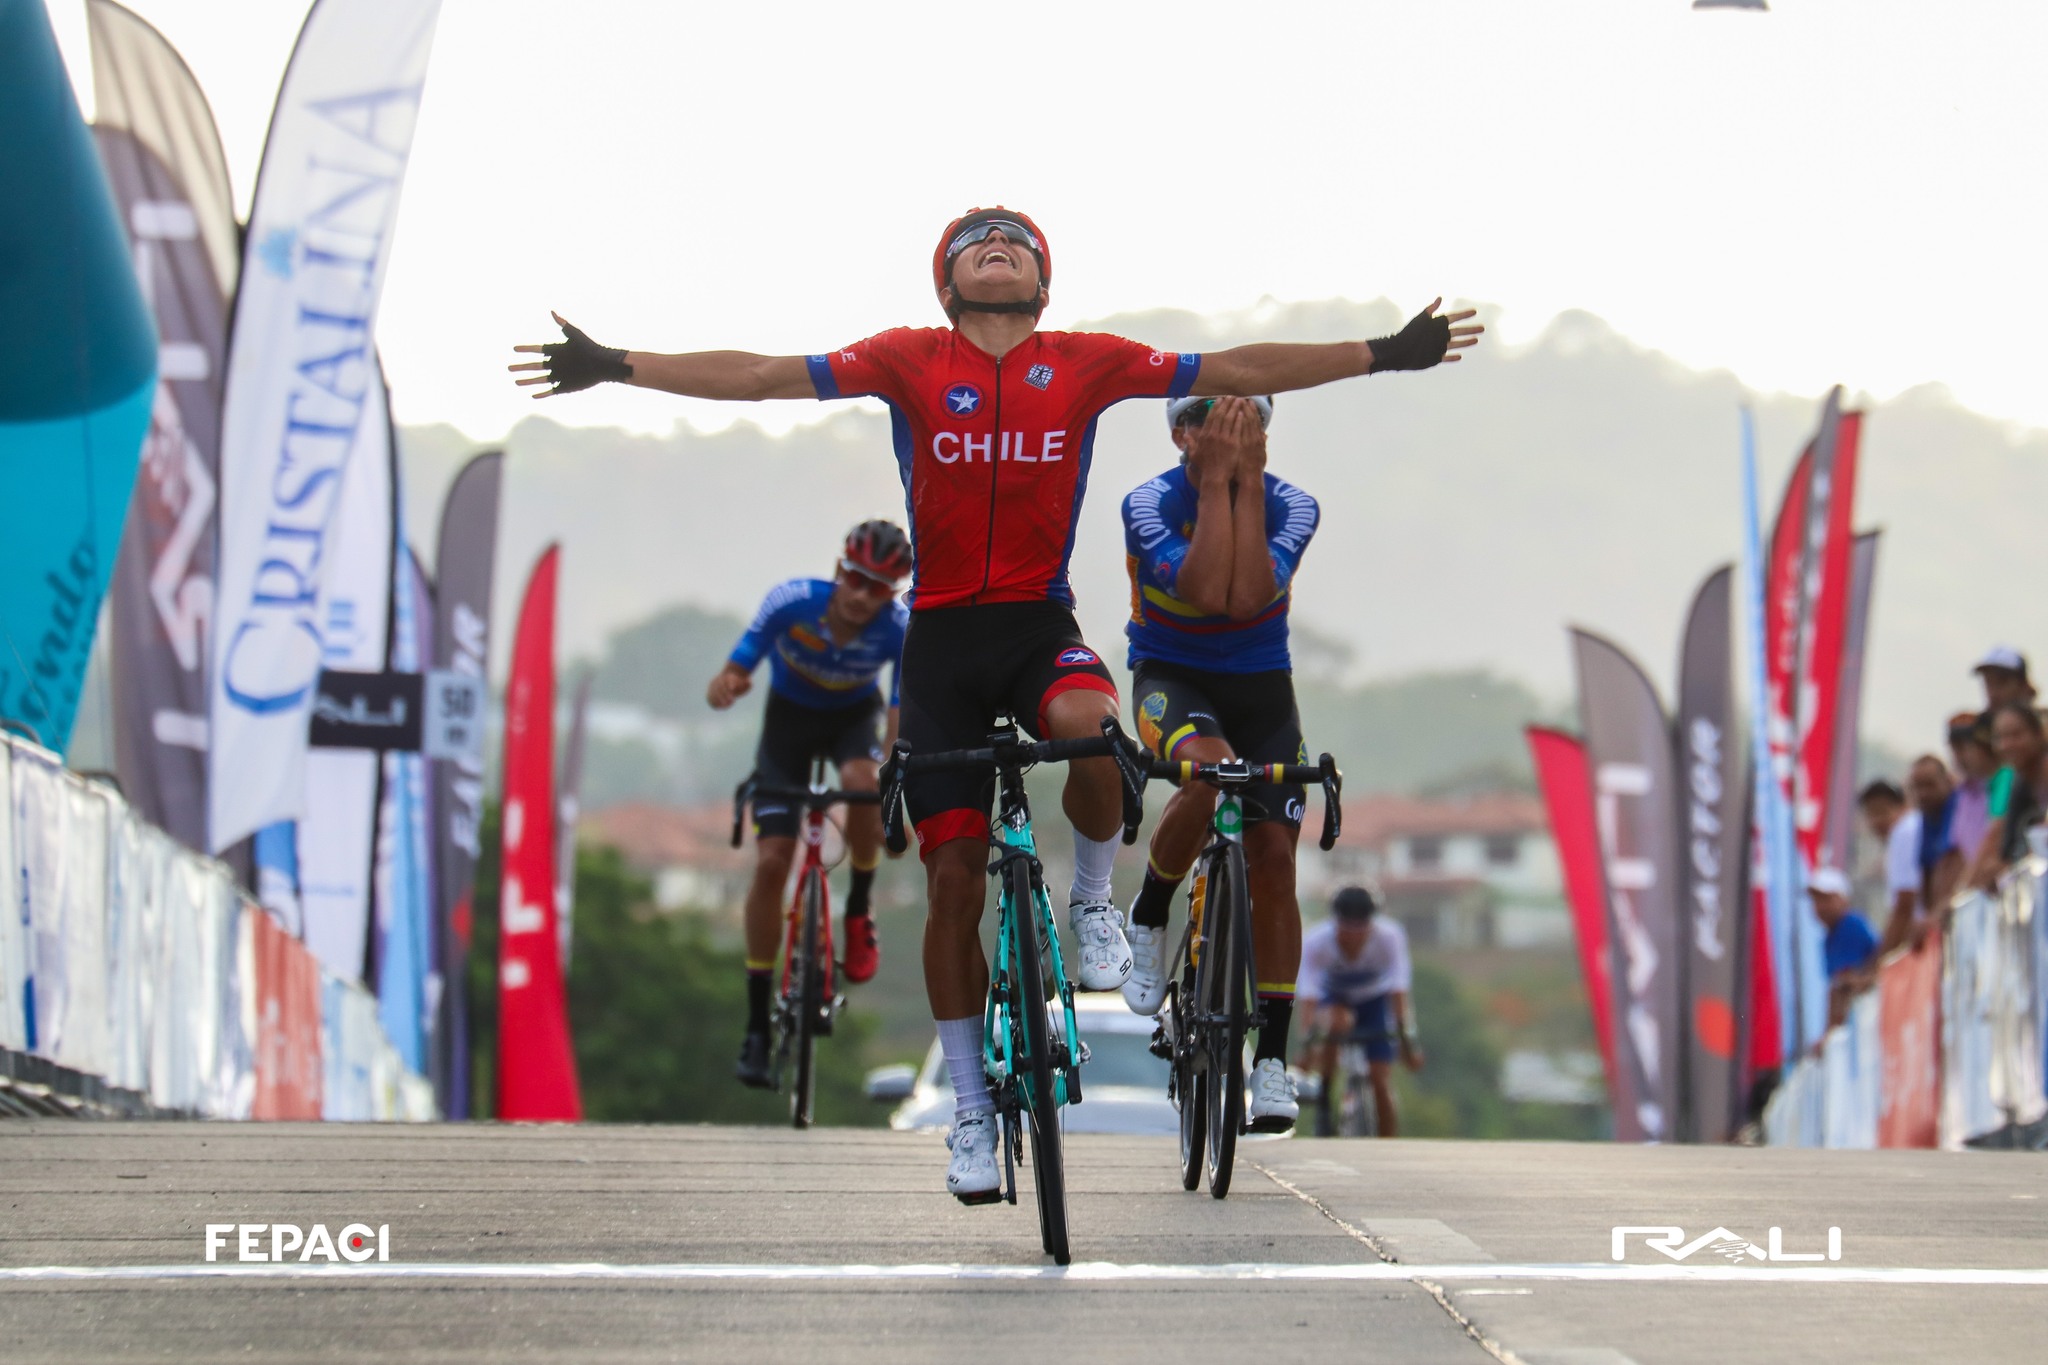 El Team Chile de Ciclismo logra una actuación brillante en Panamá